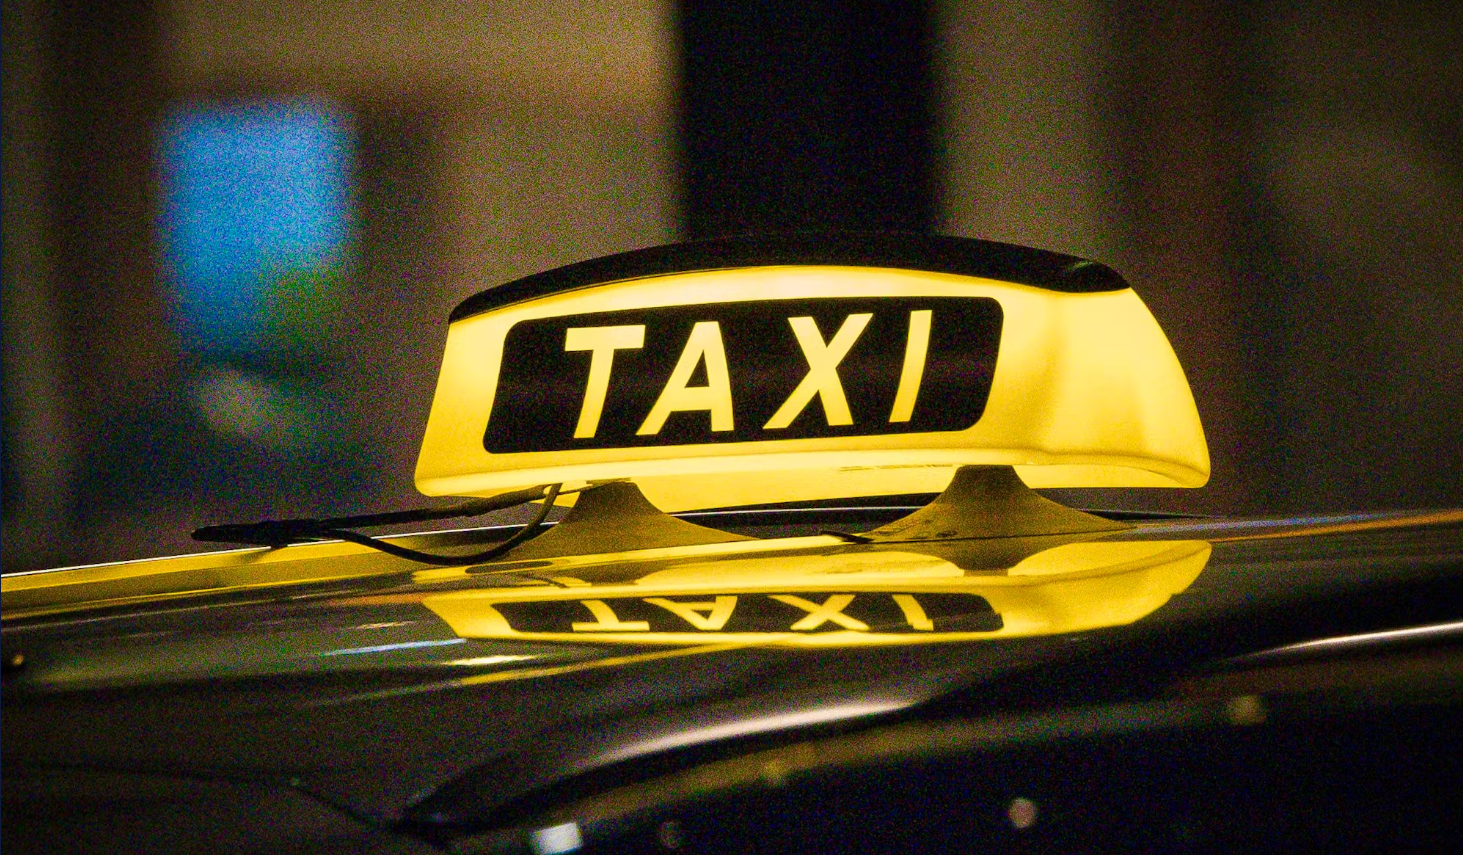 Un couple exploitait illégalement une entreprise de taxi